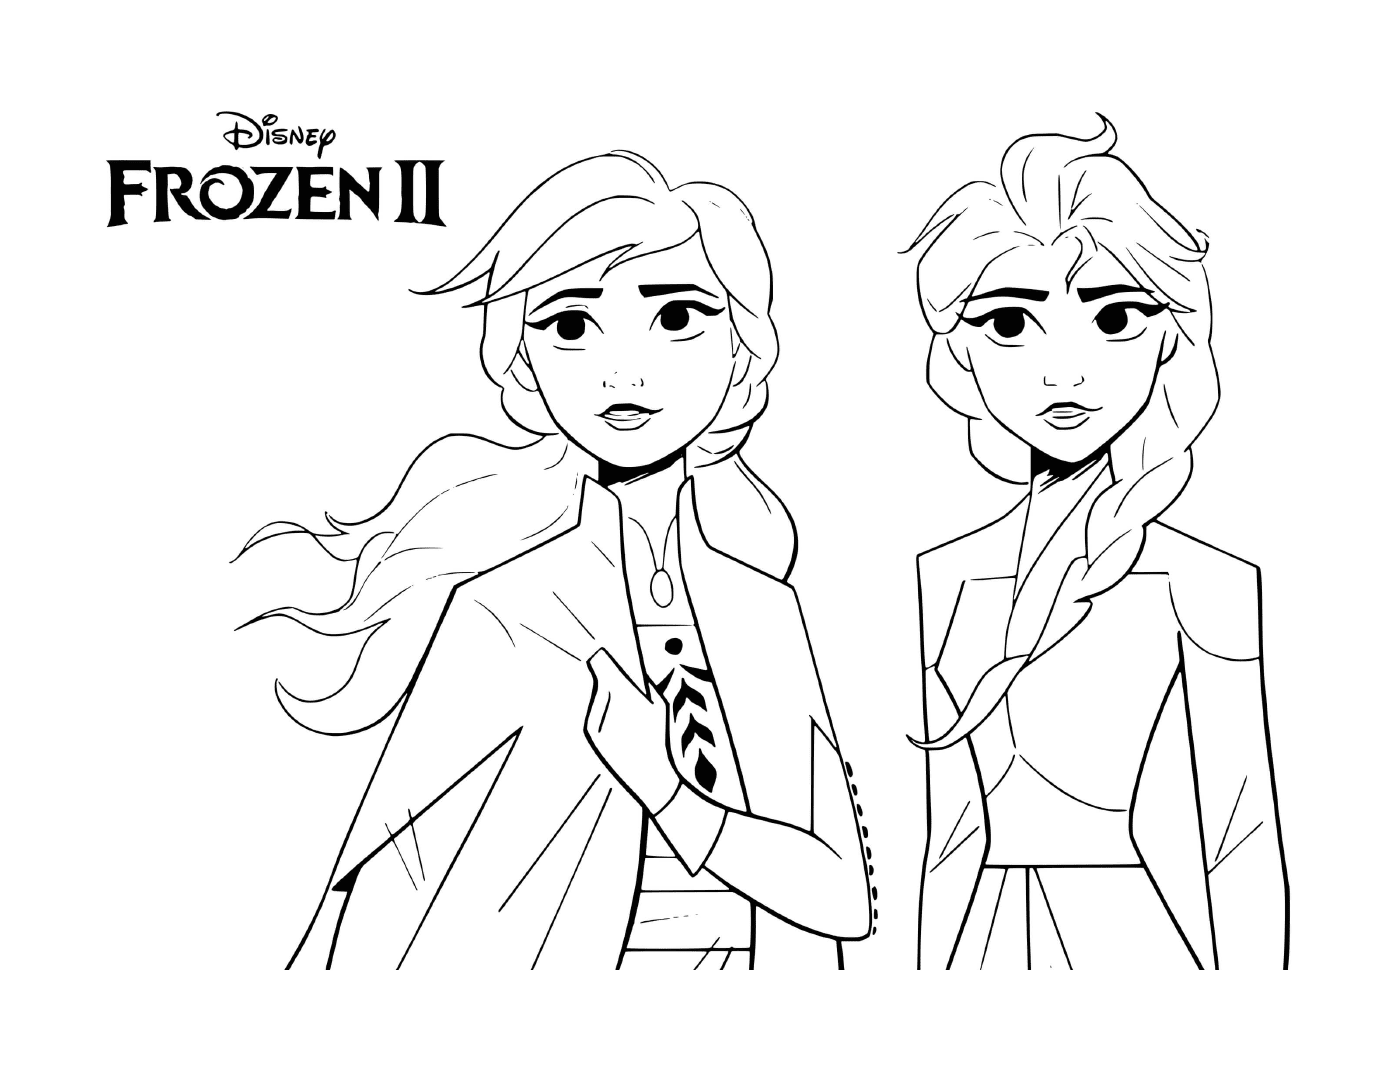  Elsa und Anna zusammen 